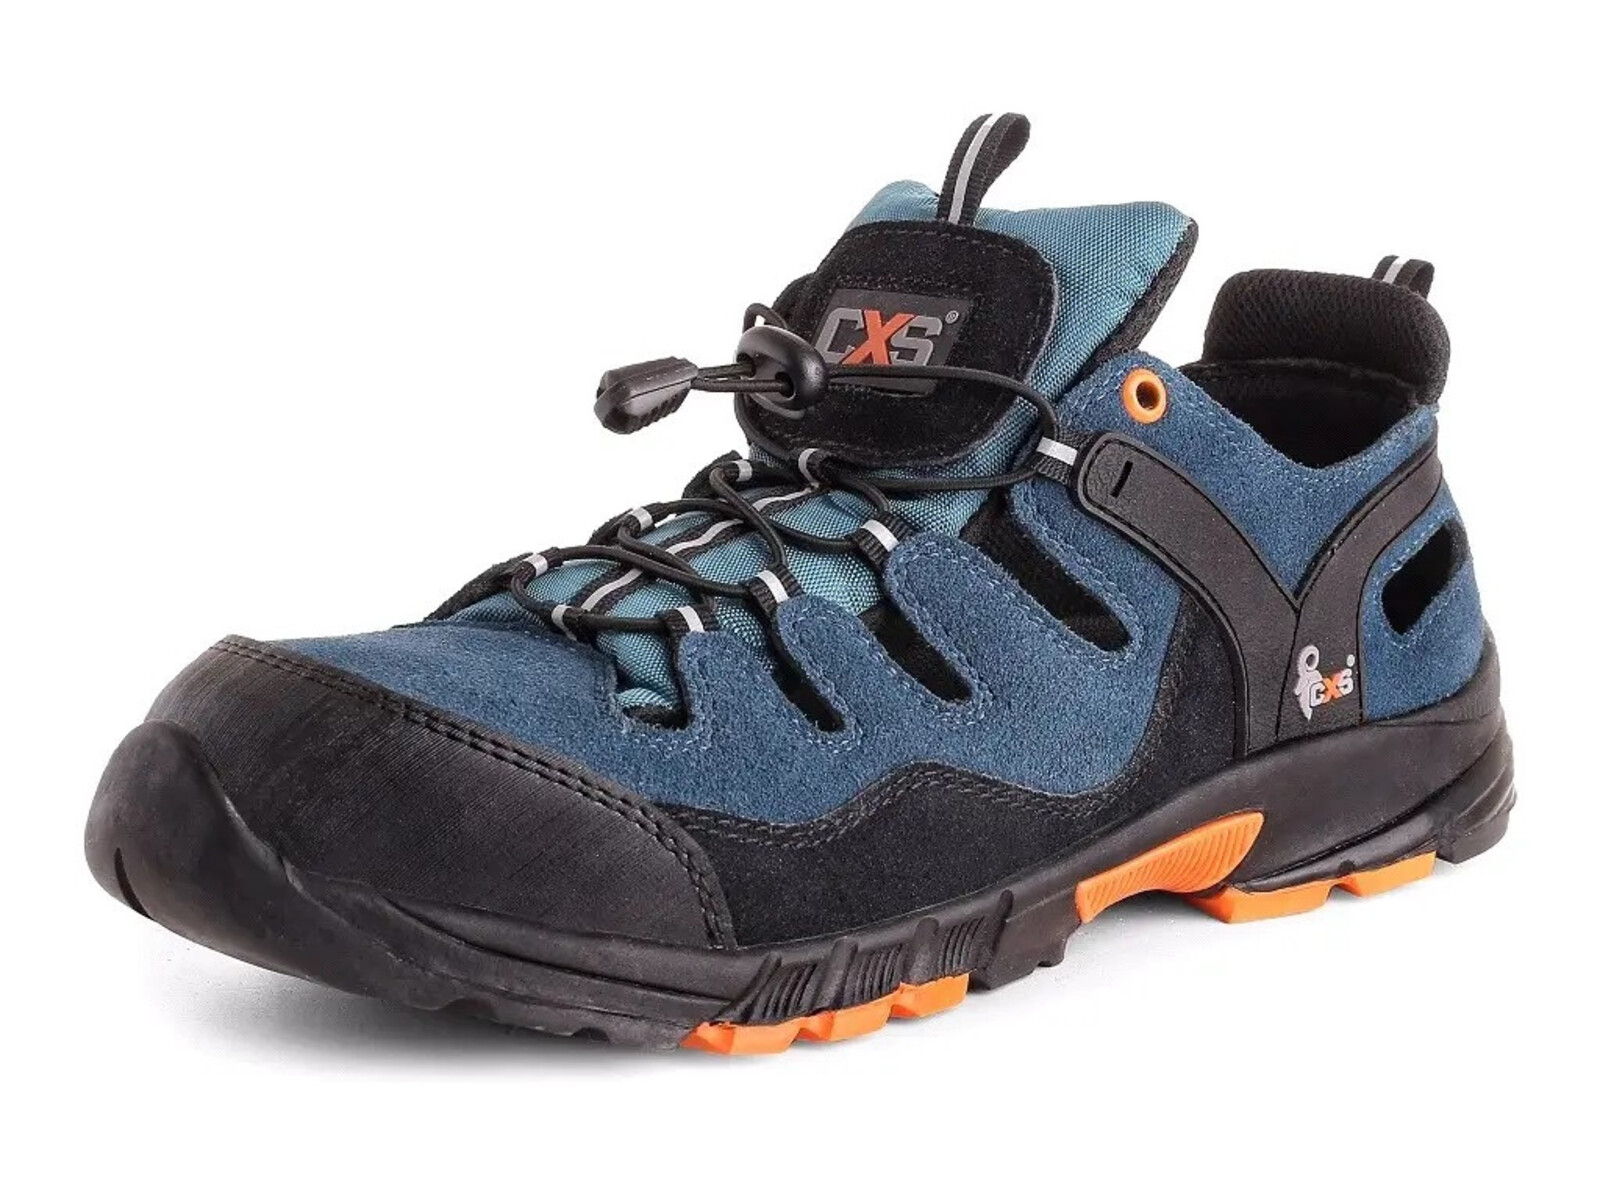 Bezpečnostné sandále CXS Land Cabrera S1 SRC - veľkosť: 43, farba: modrá/oranžová